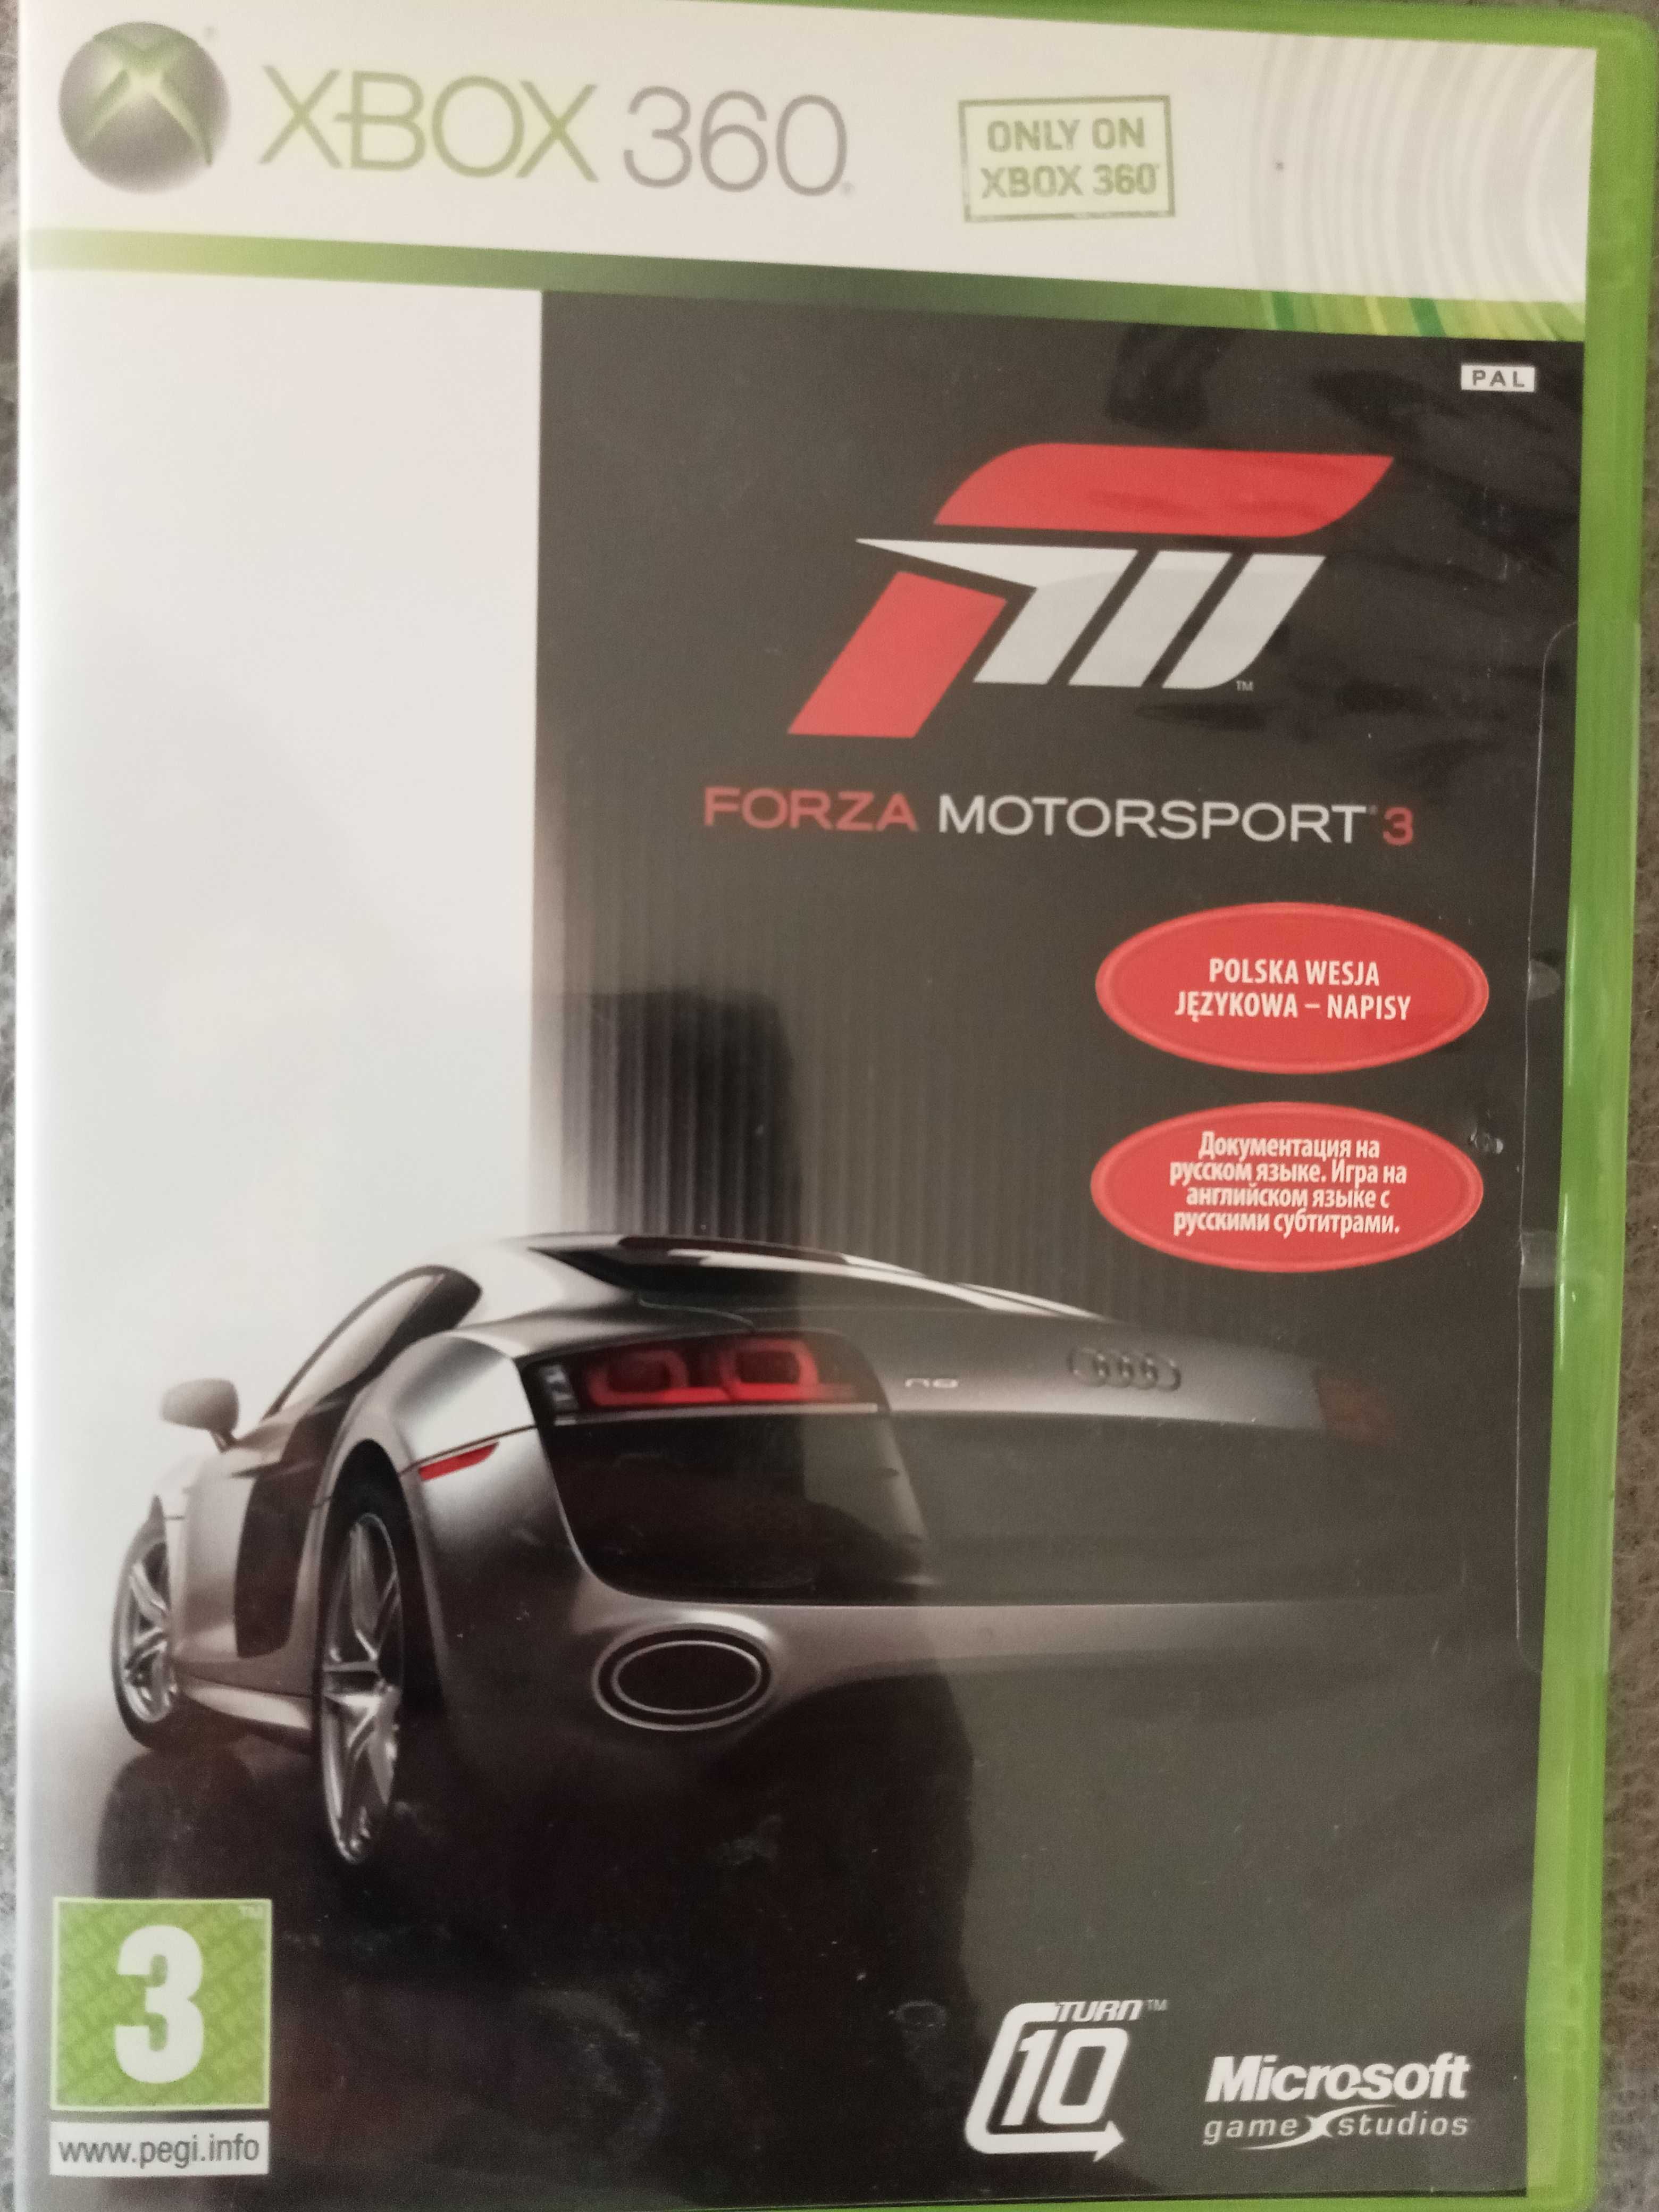 Forza Motosport 3 na XBOX360. Polska wersja językowa, napisy